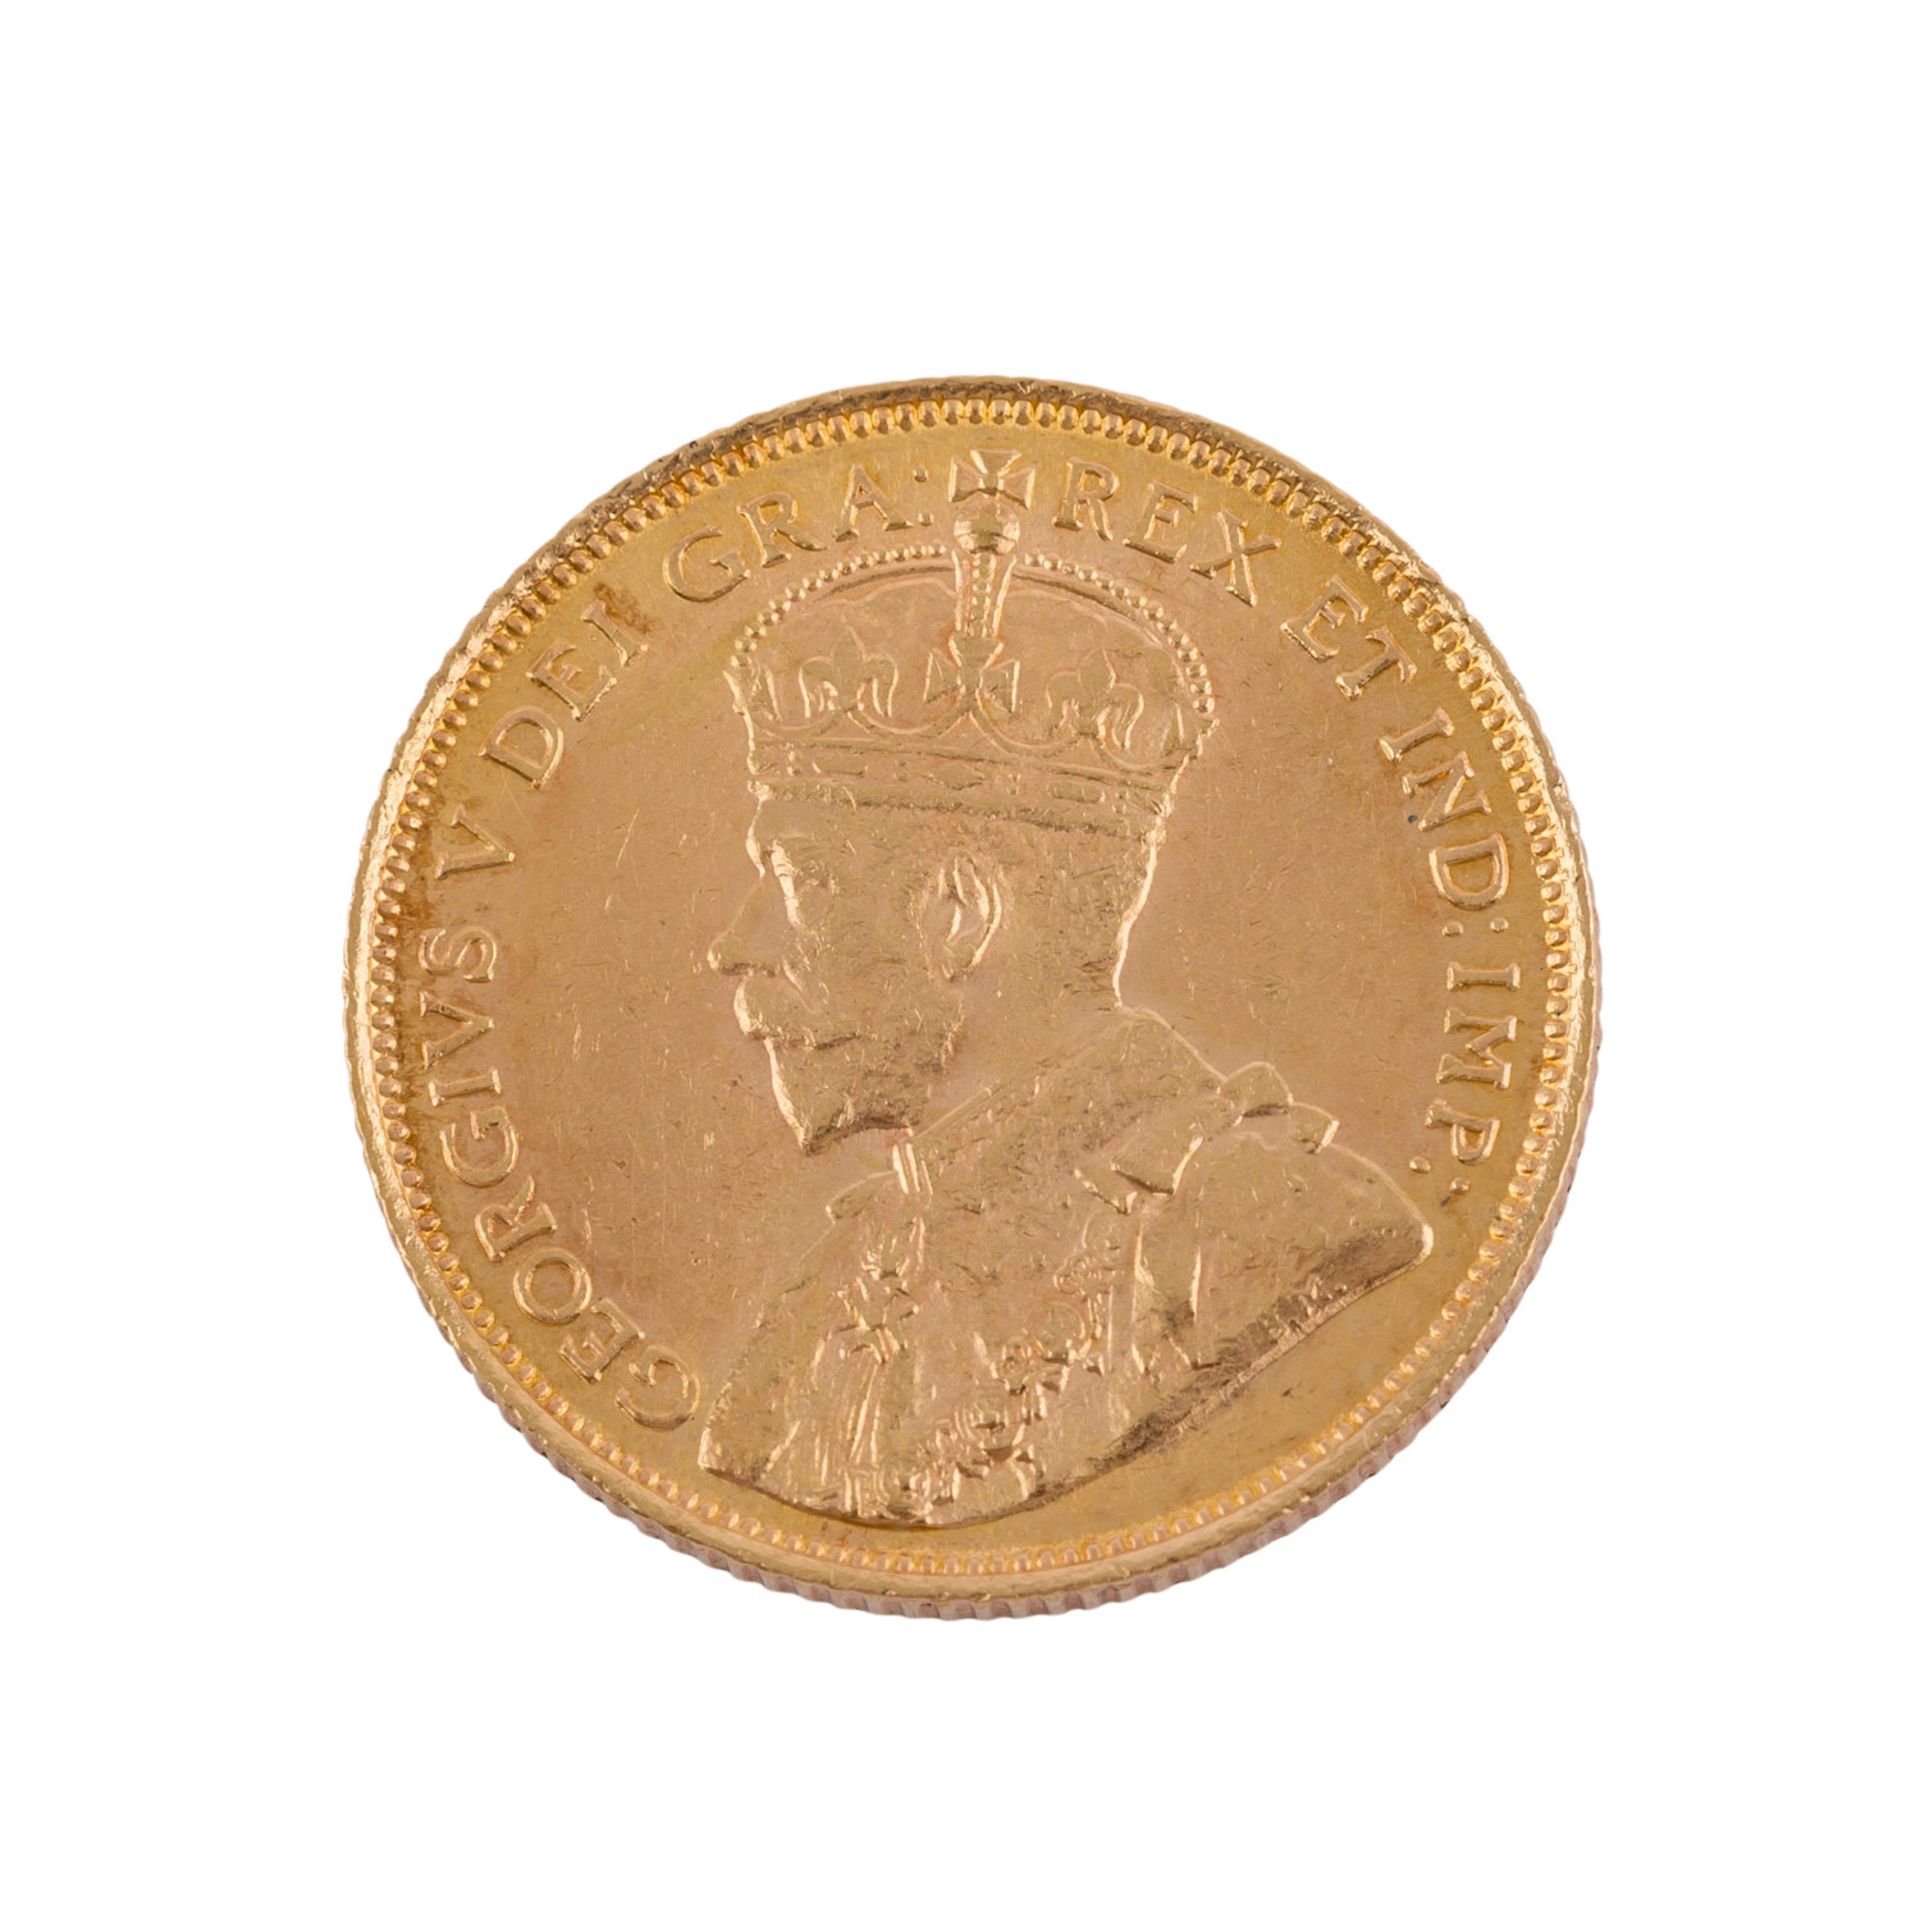 Kanada - 5 Dollars 1912, Georg V.,ca. 7,52 g fein, ssCanada - 5 Dollars 1912, George V., ca. 7.52